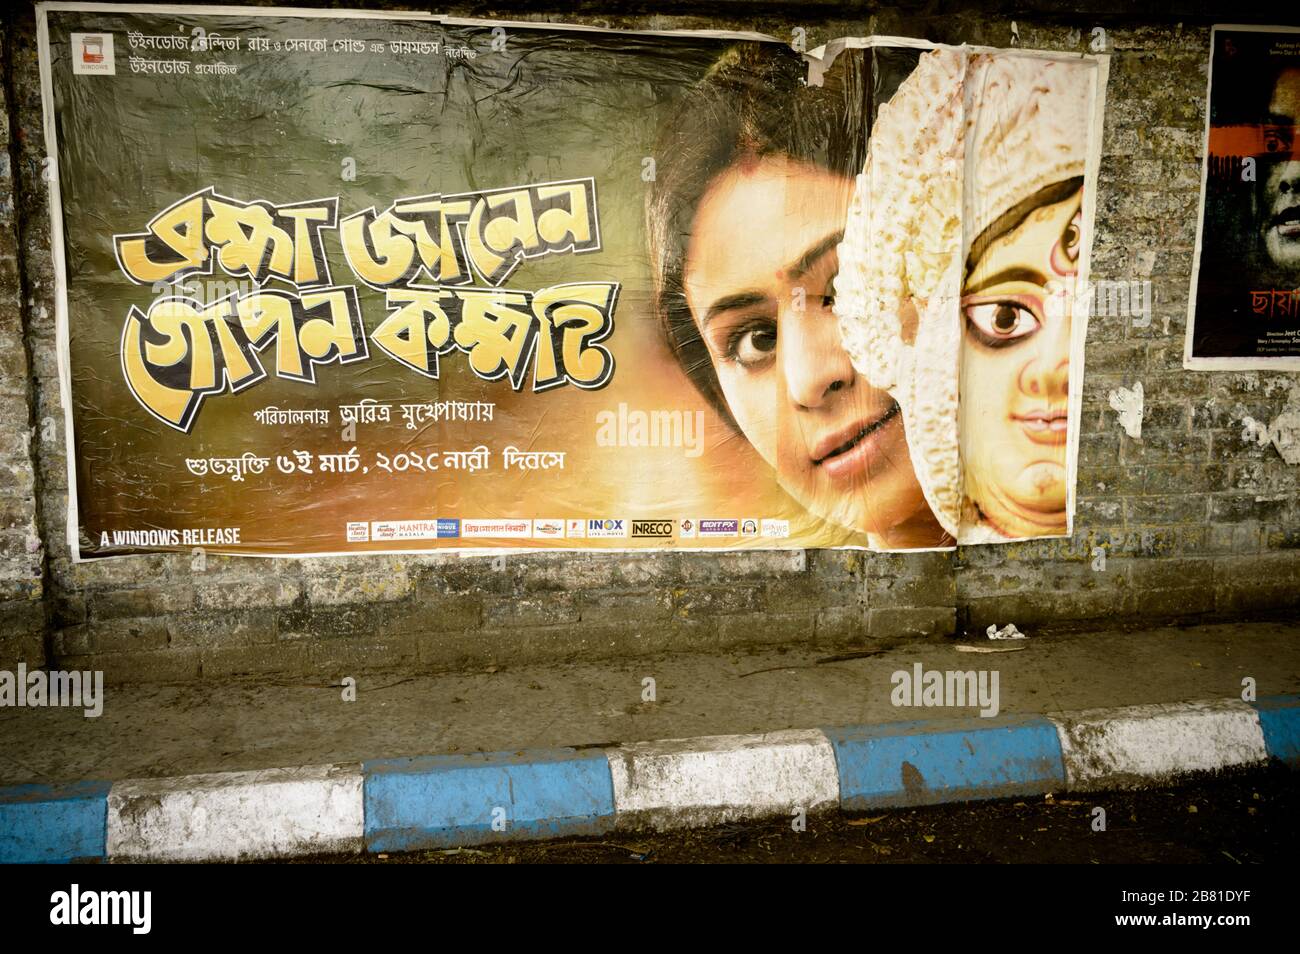 Des affiches de films indiens Bengali Tollywood sur un vieux mur de briques de la rue de la ville. Tollygunge Kolkata Bengale Ouest Inde Asie du Sud Pacifique Mars 2020 Banque D'Images